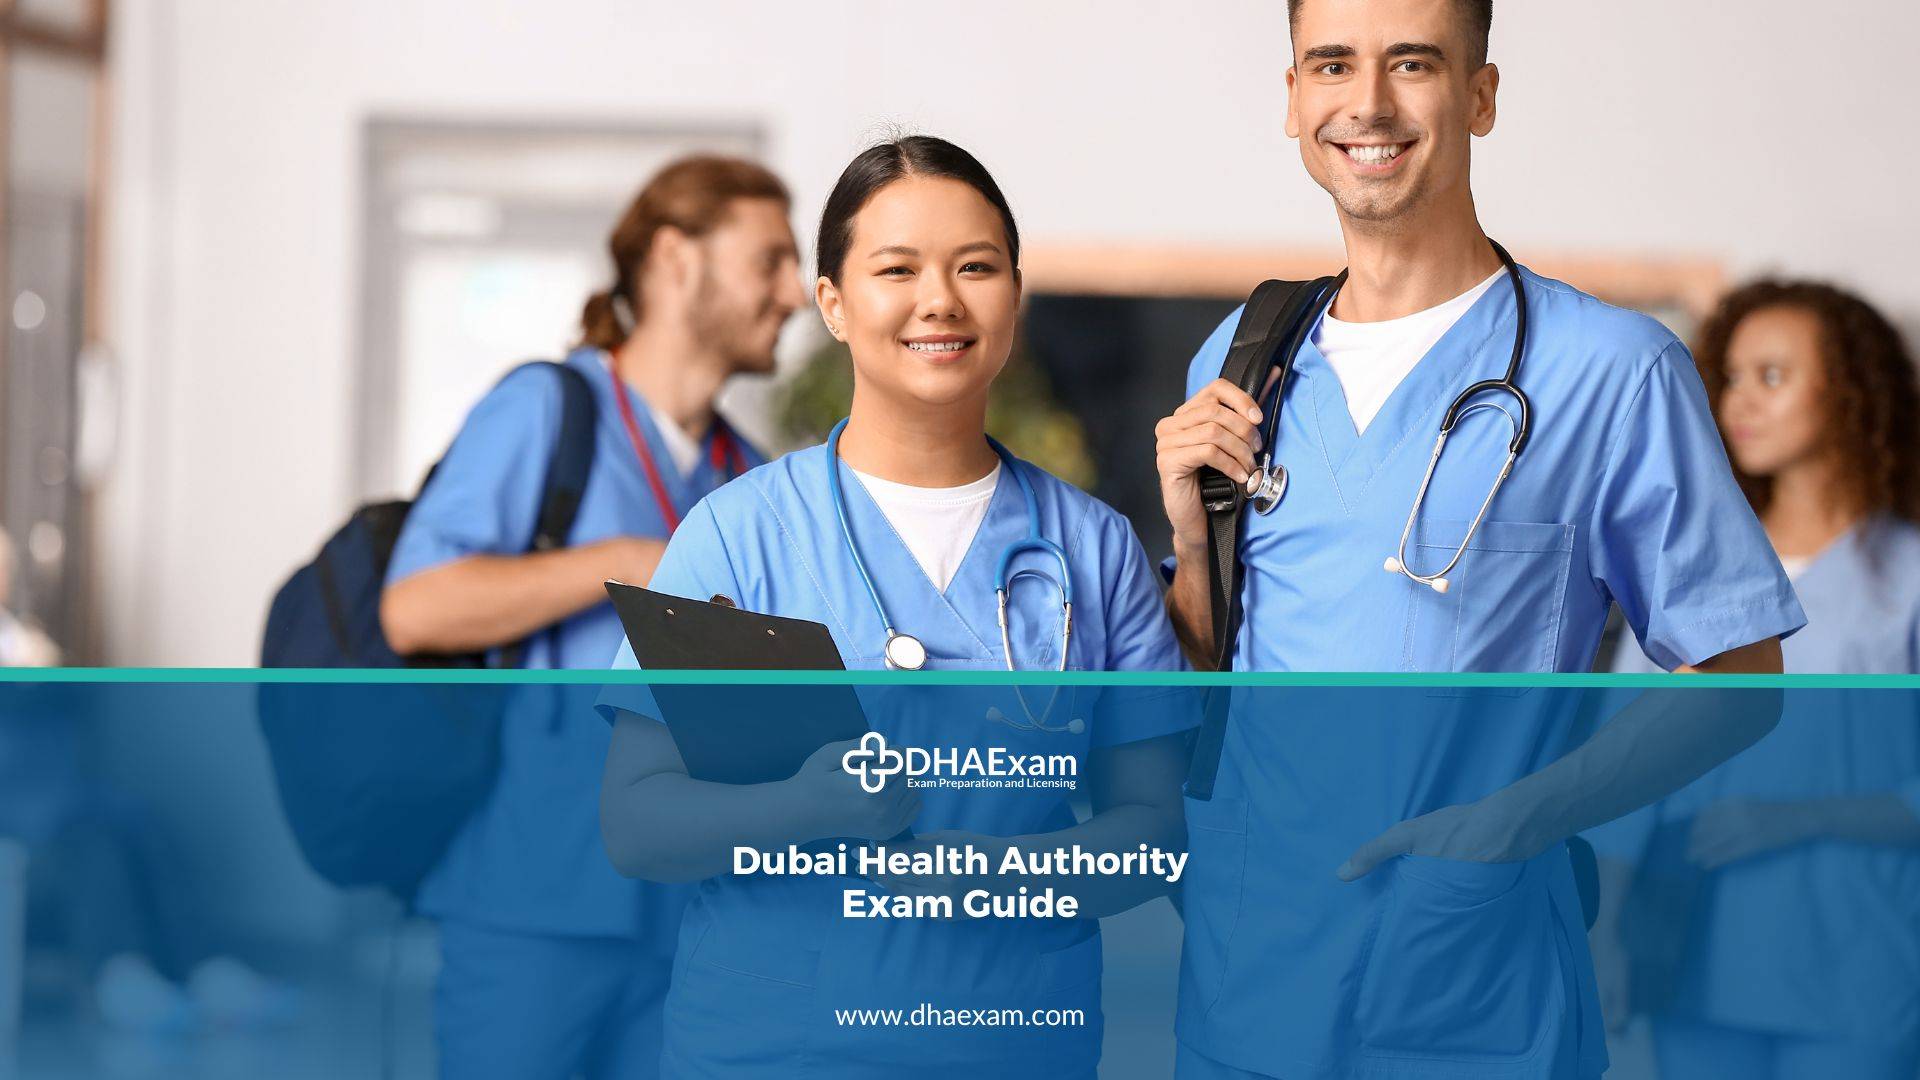 Dubai Health Authority Exam Guide